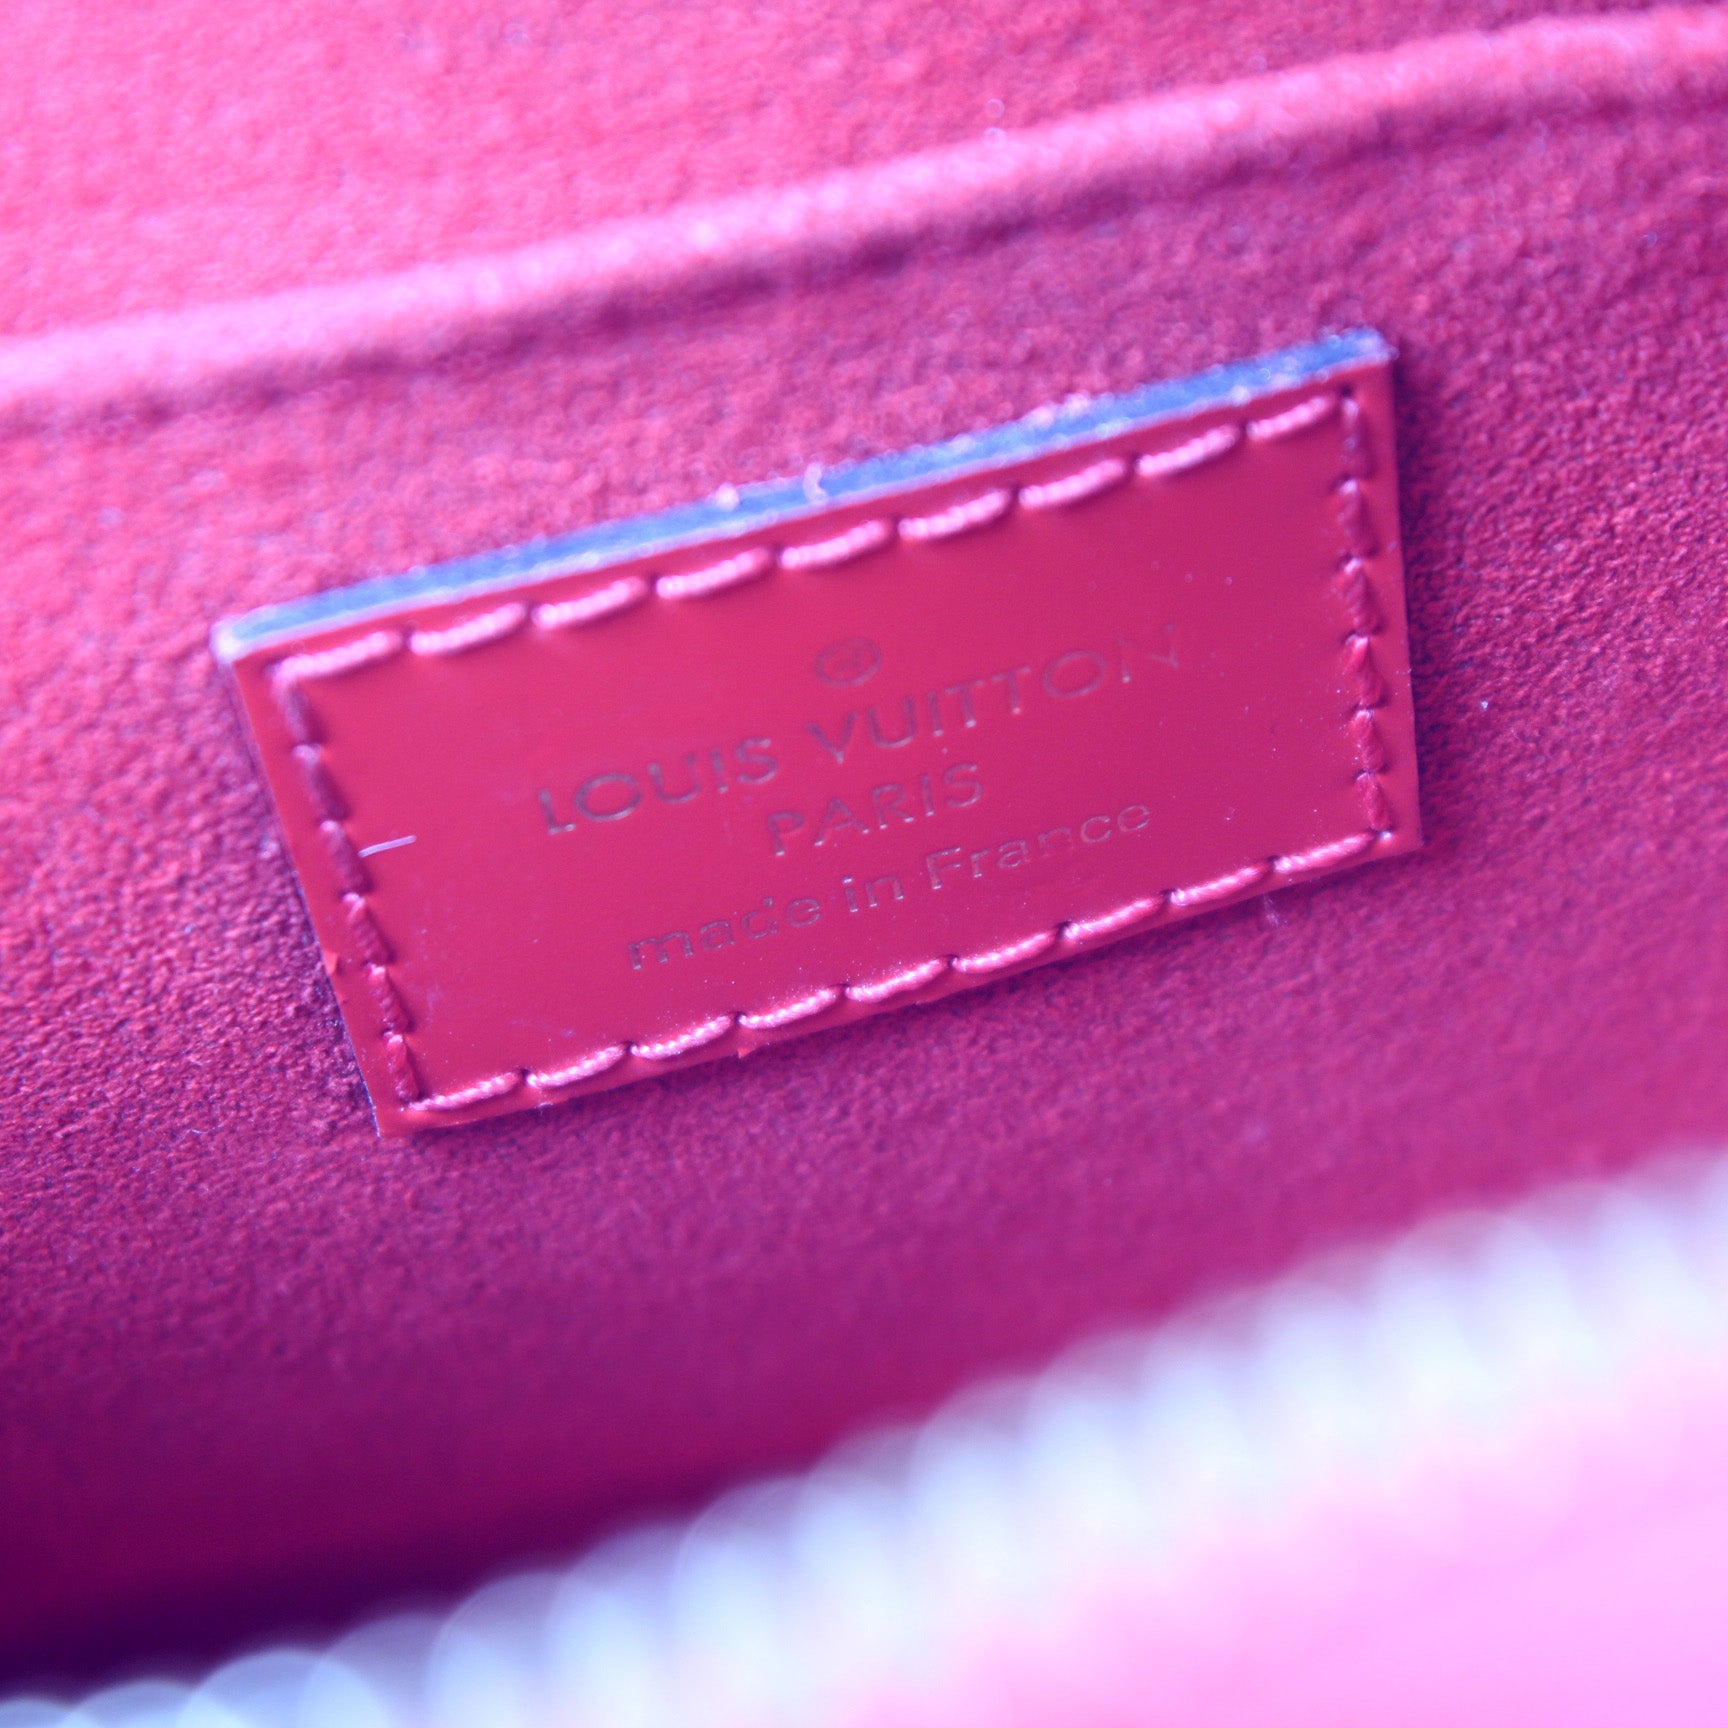 Louis Vuitton Alma Mini Epi - For Sale on 1stDibs